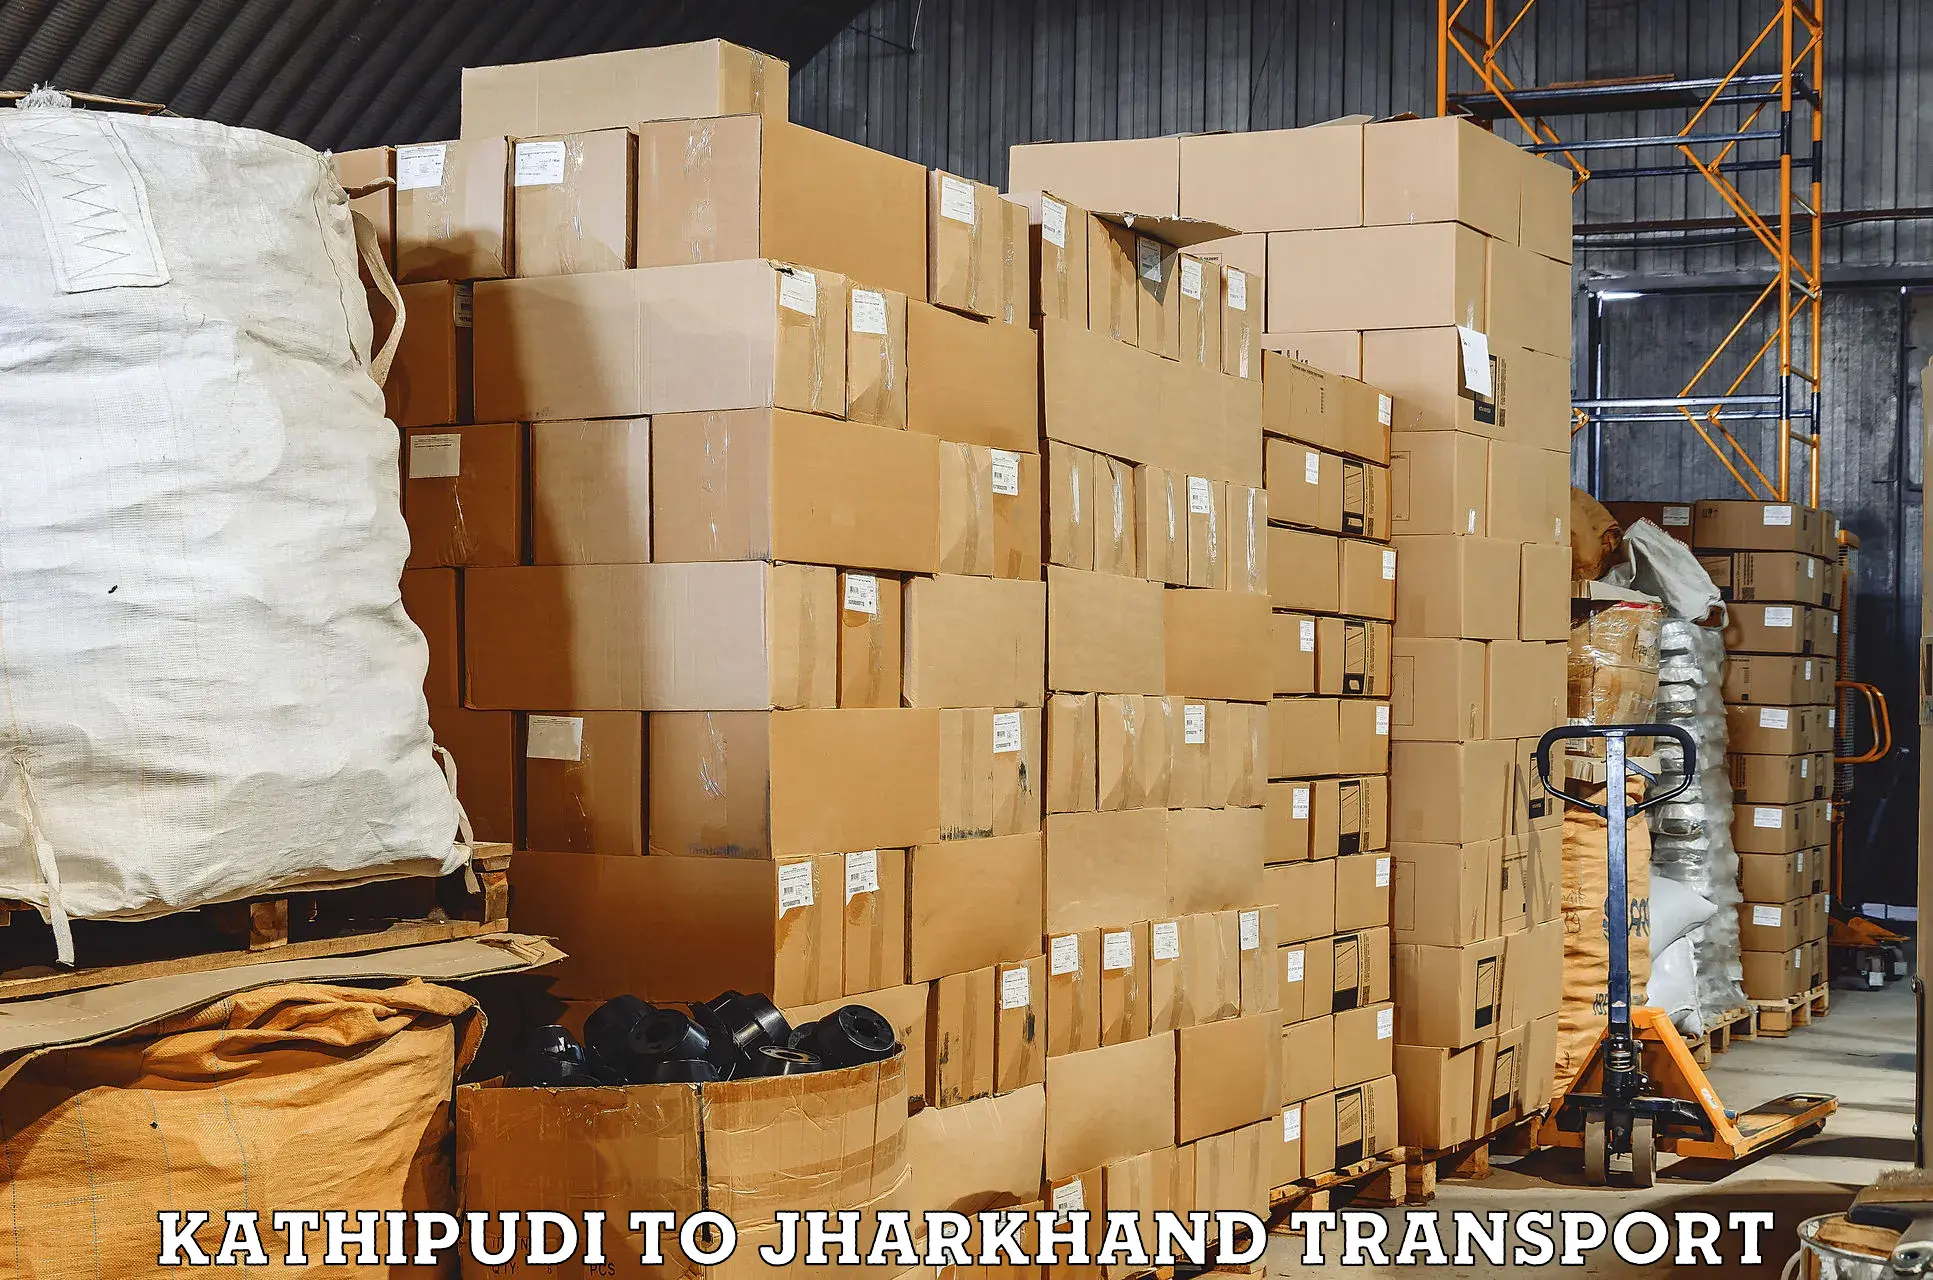 Pick up transport service Kathipudi to Seraikela Kharsawan